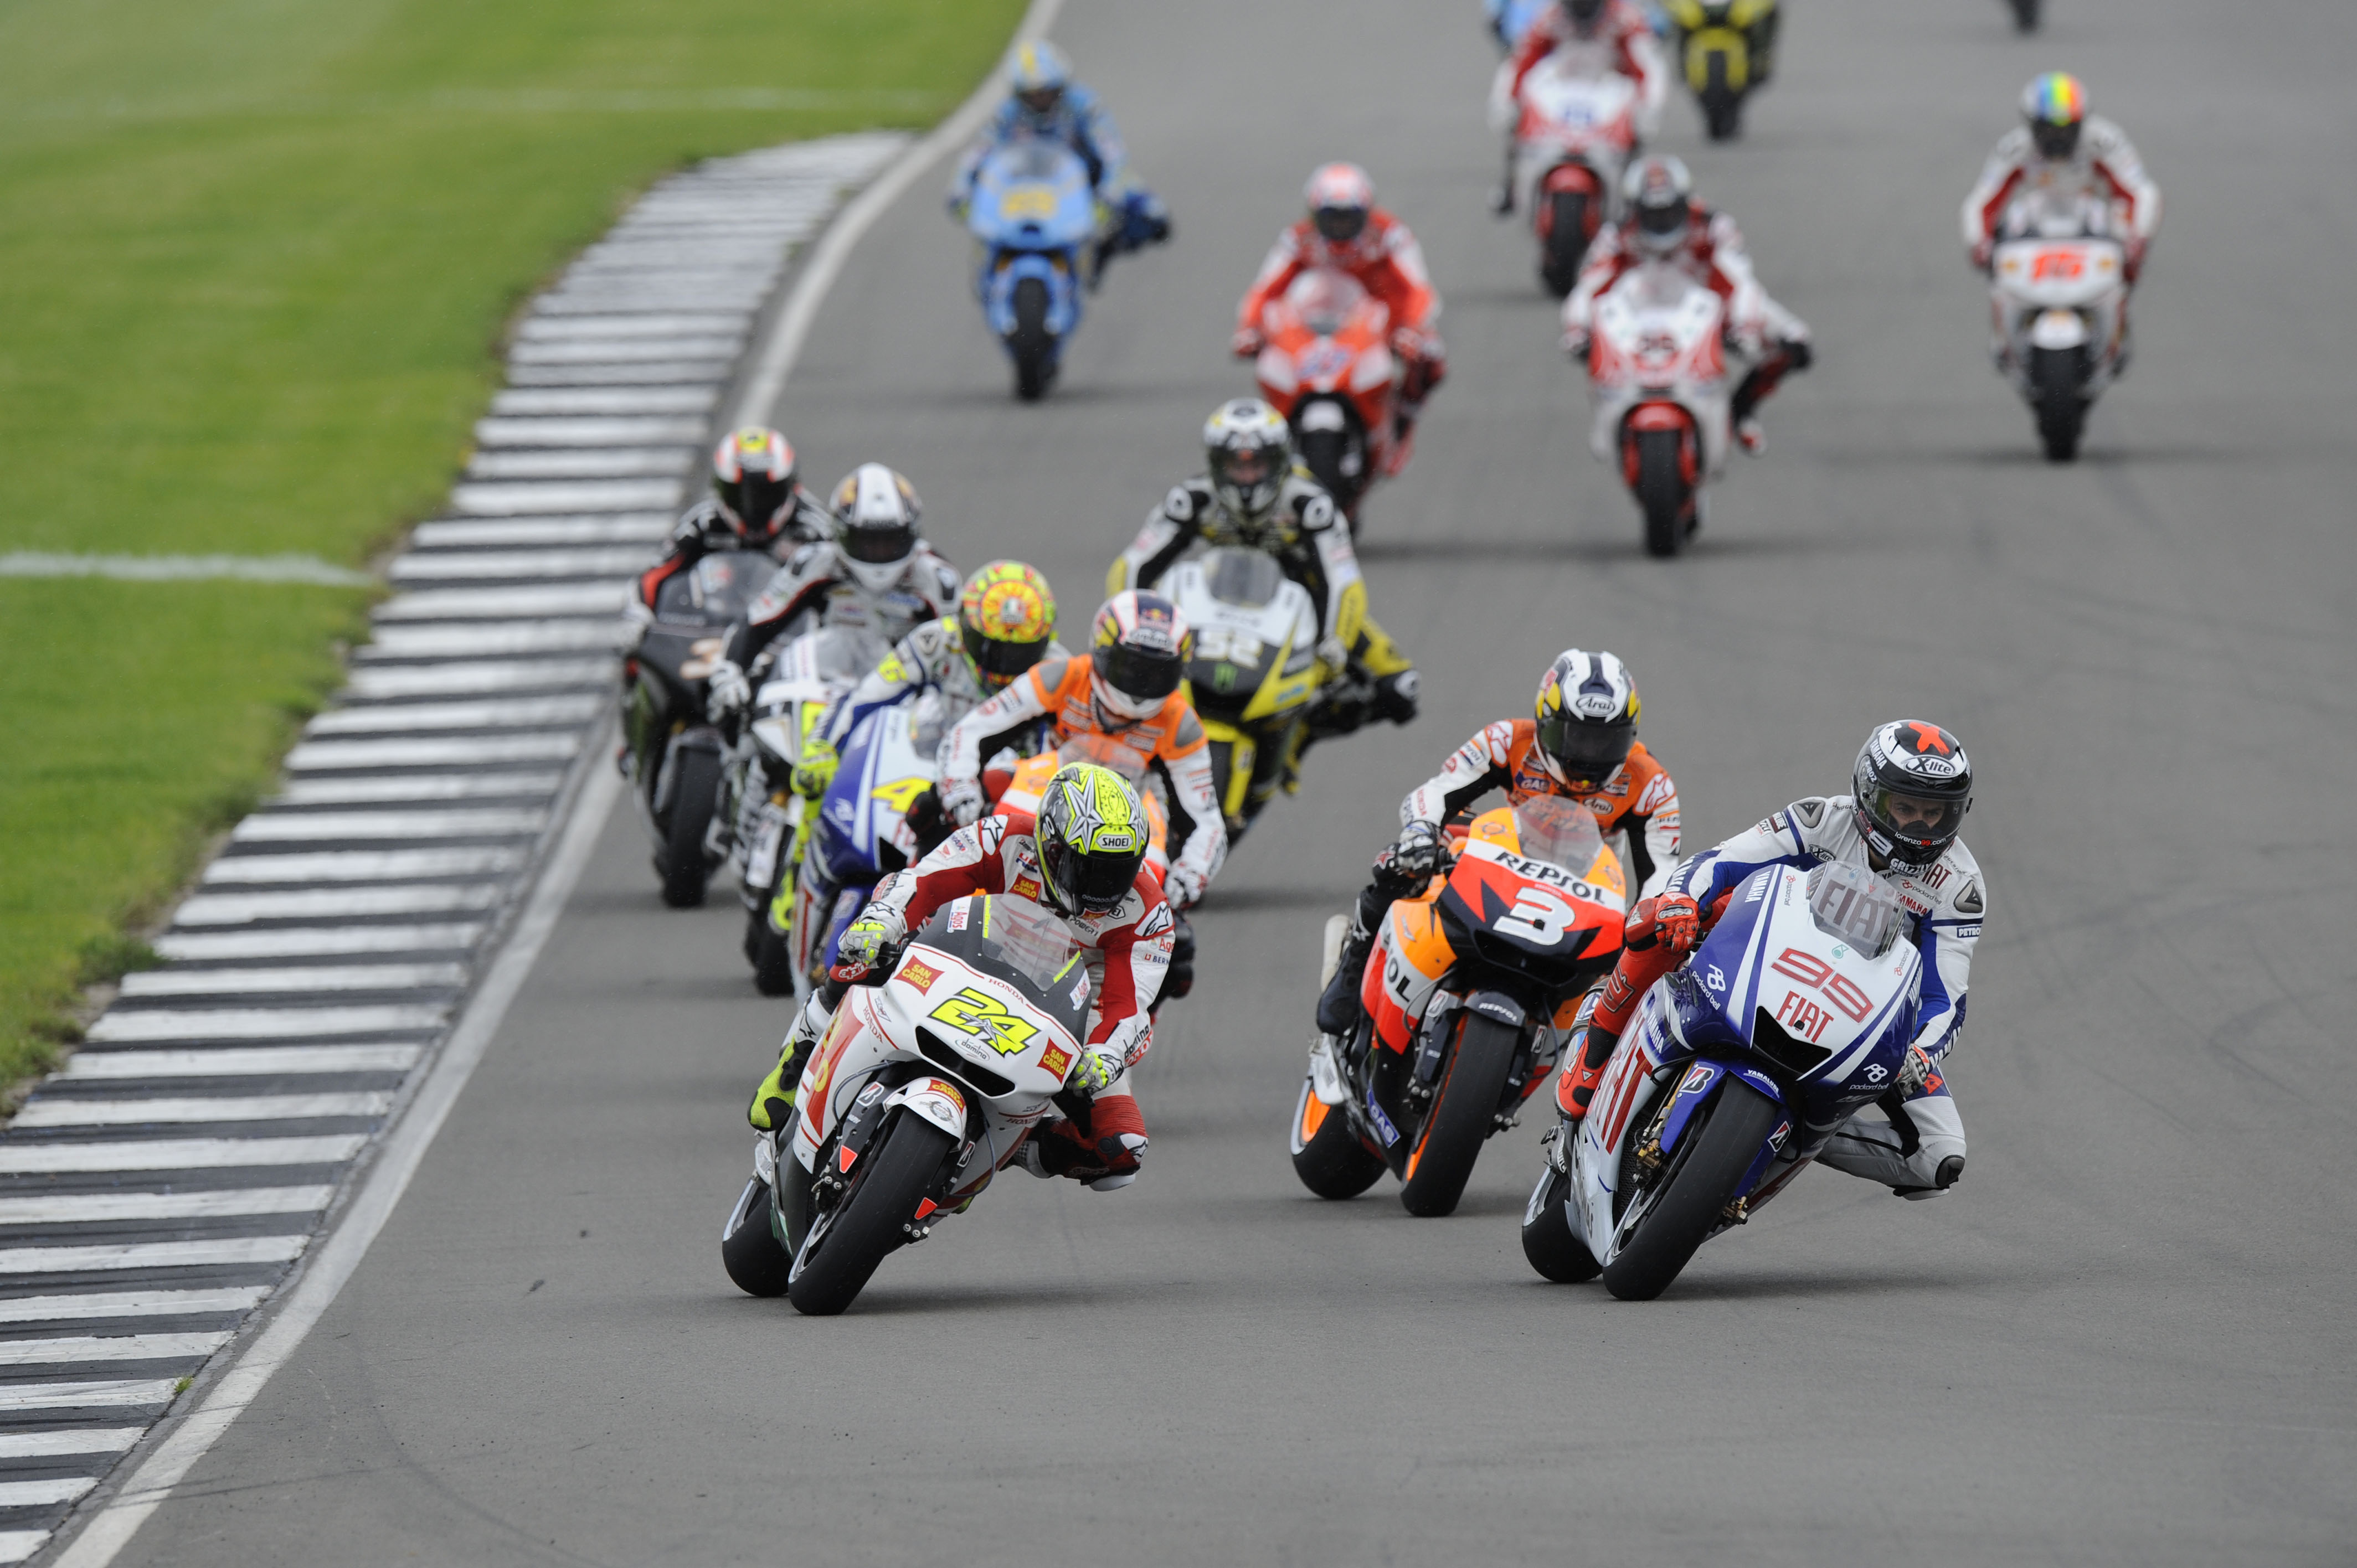 Donington Park to host 2015 British MotoGP round